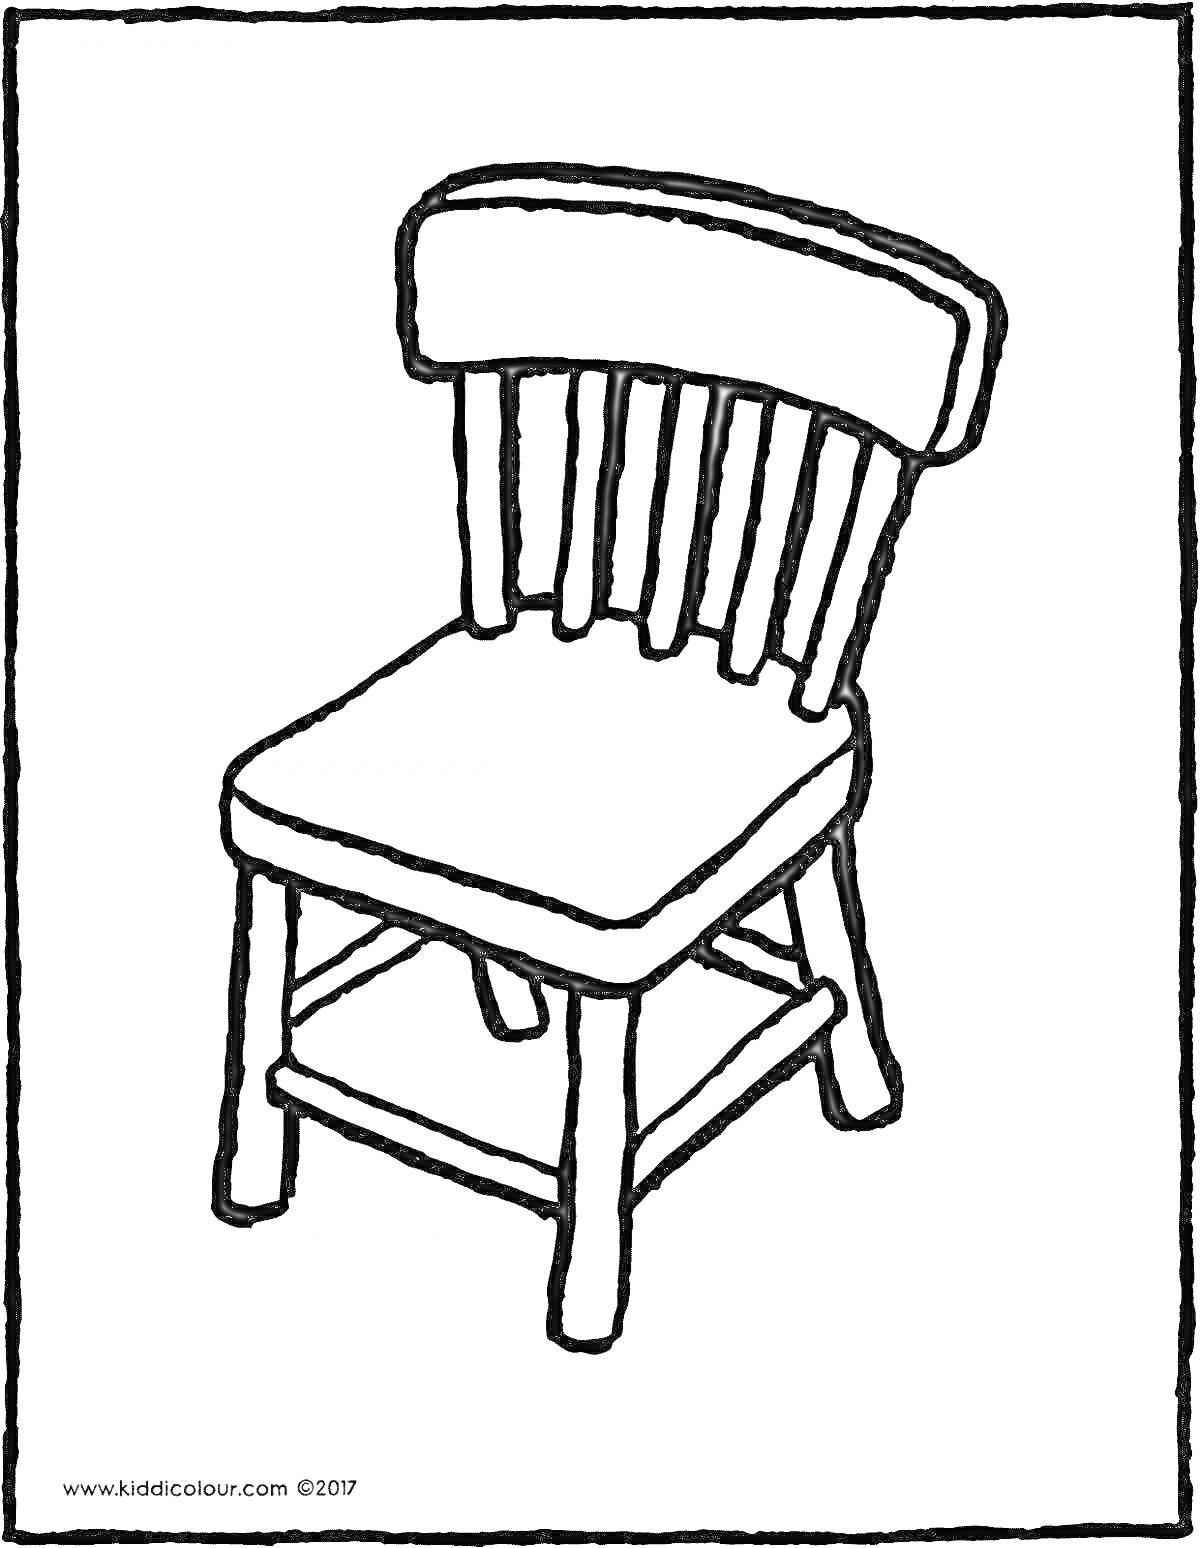 Раскраска Детский стул со спинкой и четырьмя ножками